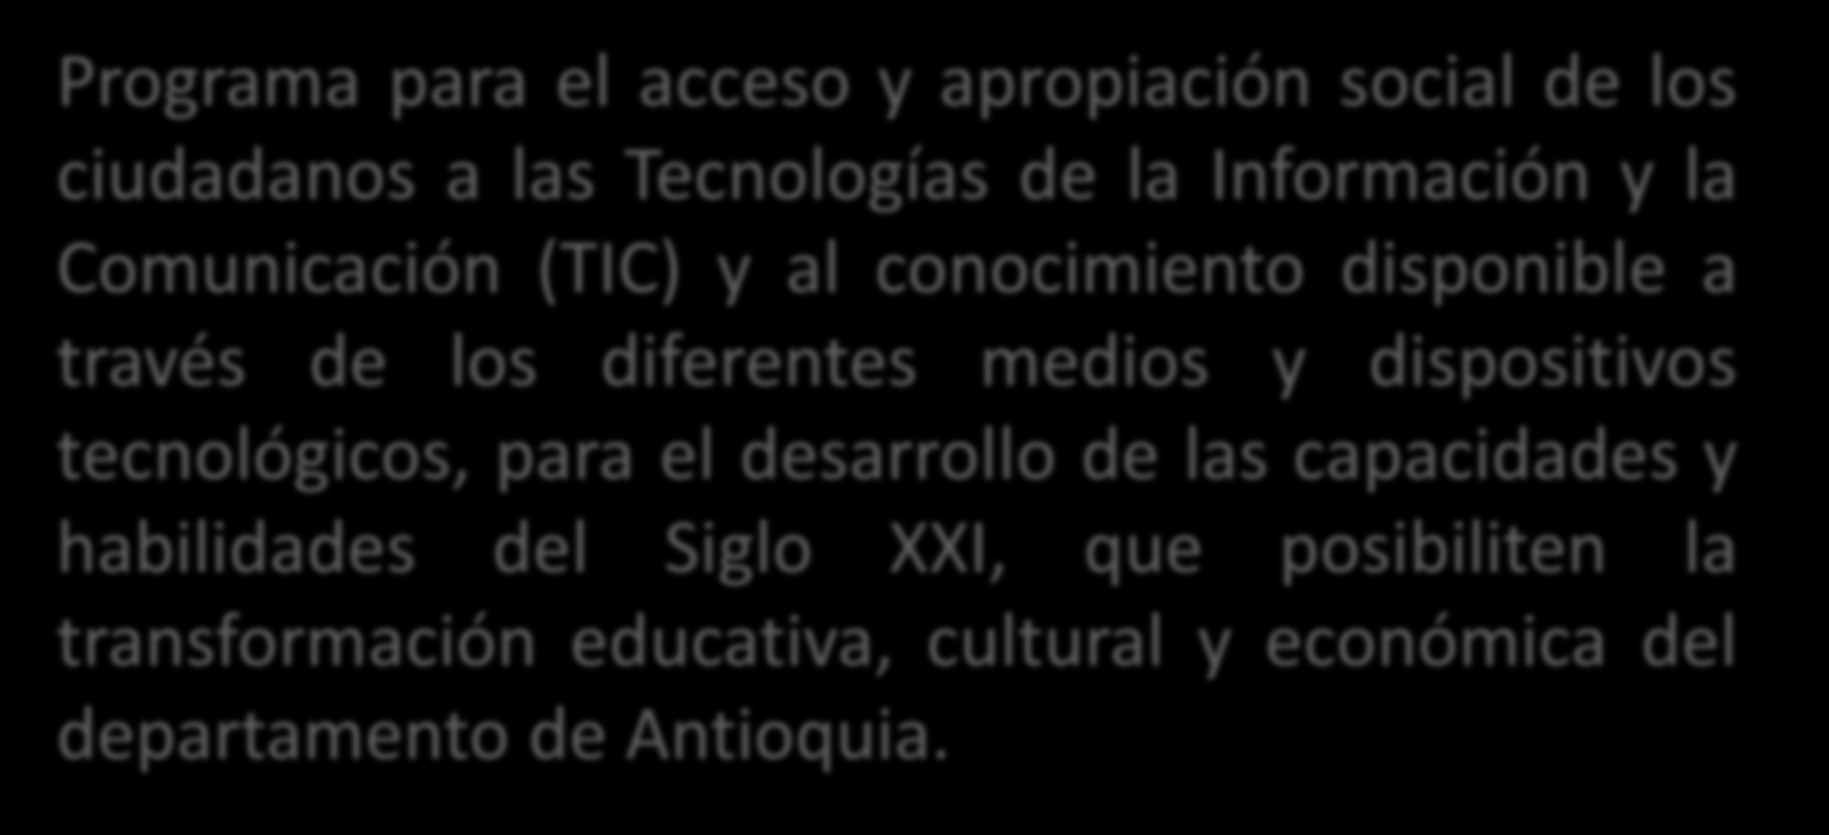 Antioquia Digital Programa para el acceso y apropiación social de los ciudadanos a las Tecnologías de la Información y la Comunicación (TIC) y al conocimiento disponible a través de los diferentes